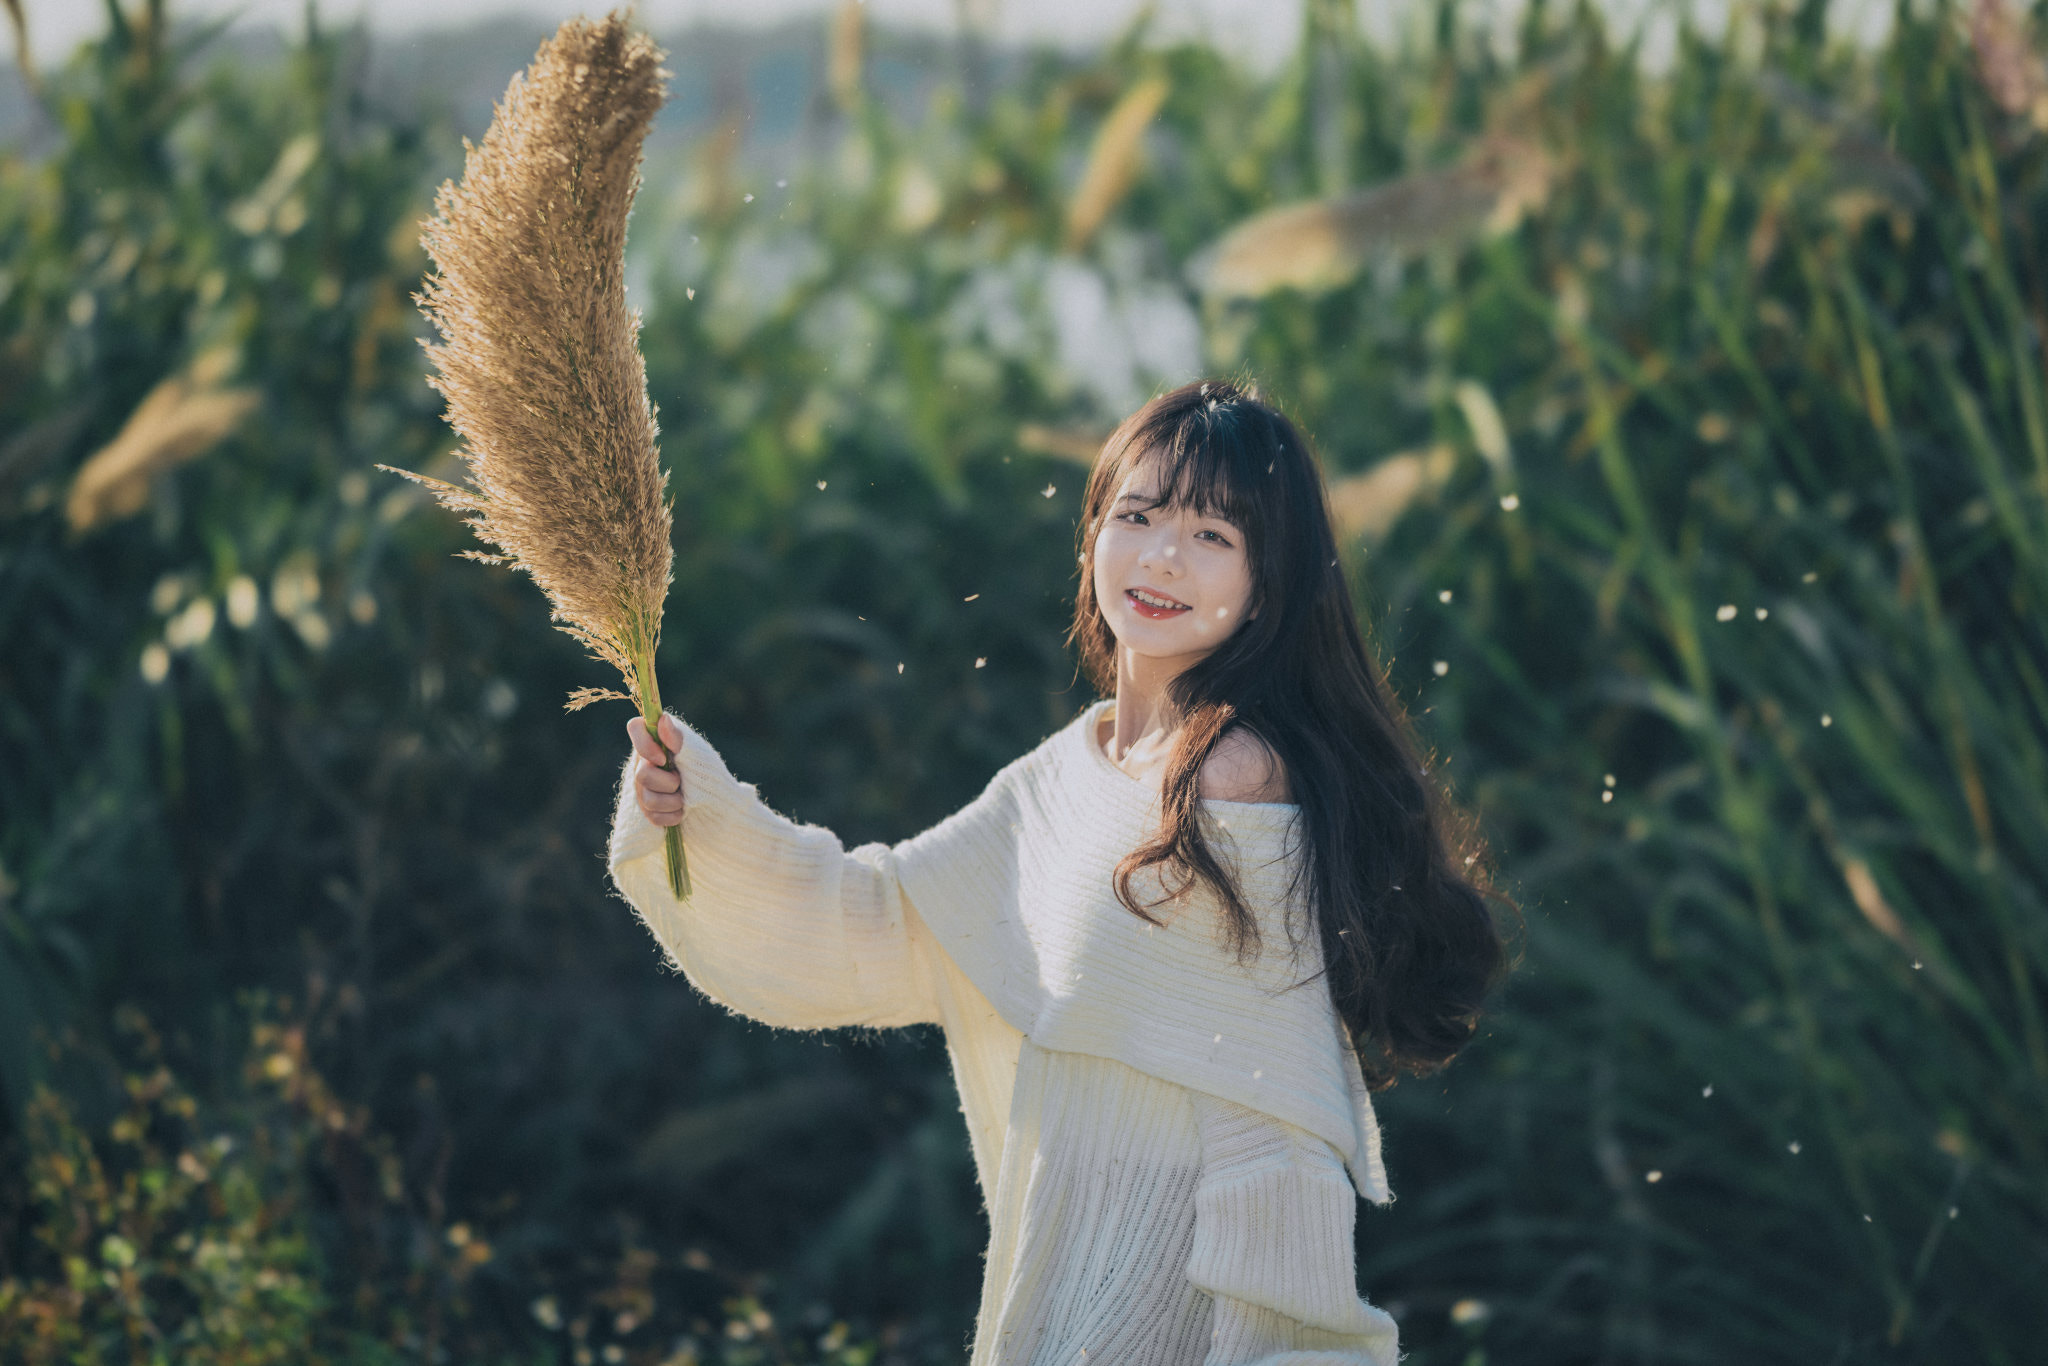 Qin Xiaoqiang Women Asian Dark Hair Long Hair White Clothing Plants Smiling Happy Nature Field 2048x1366